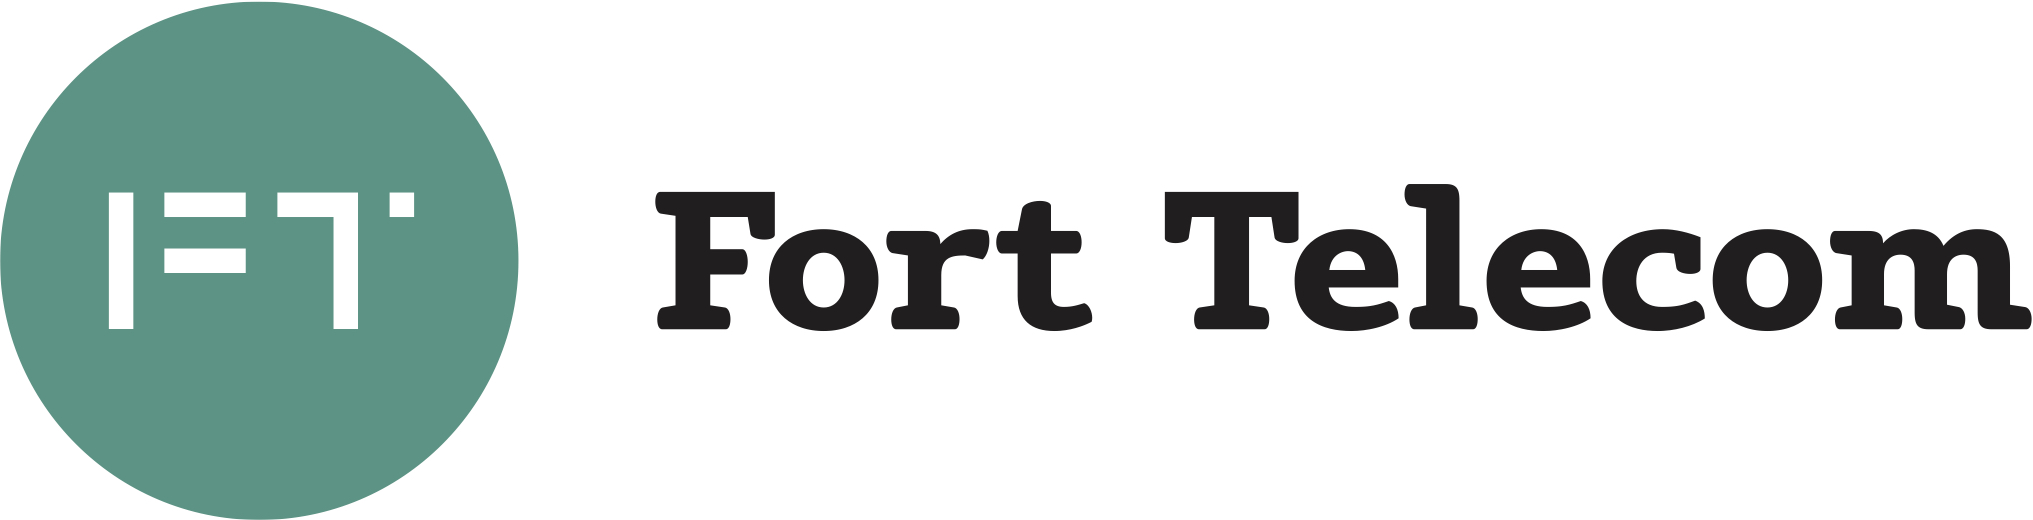 _fort-telecom-logo